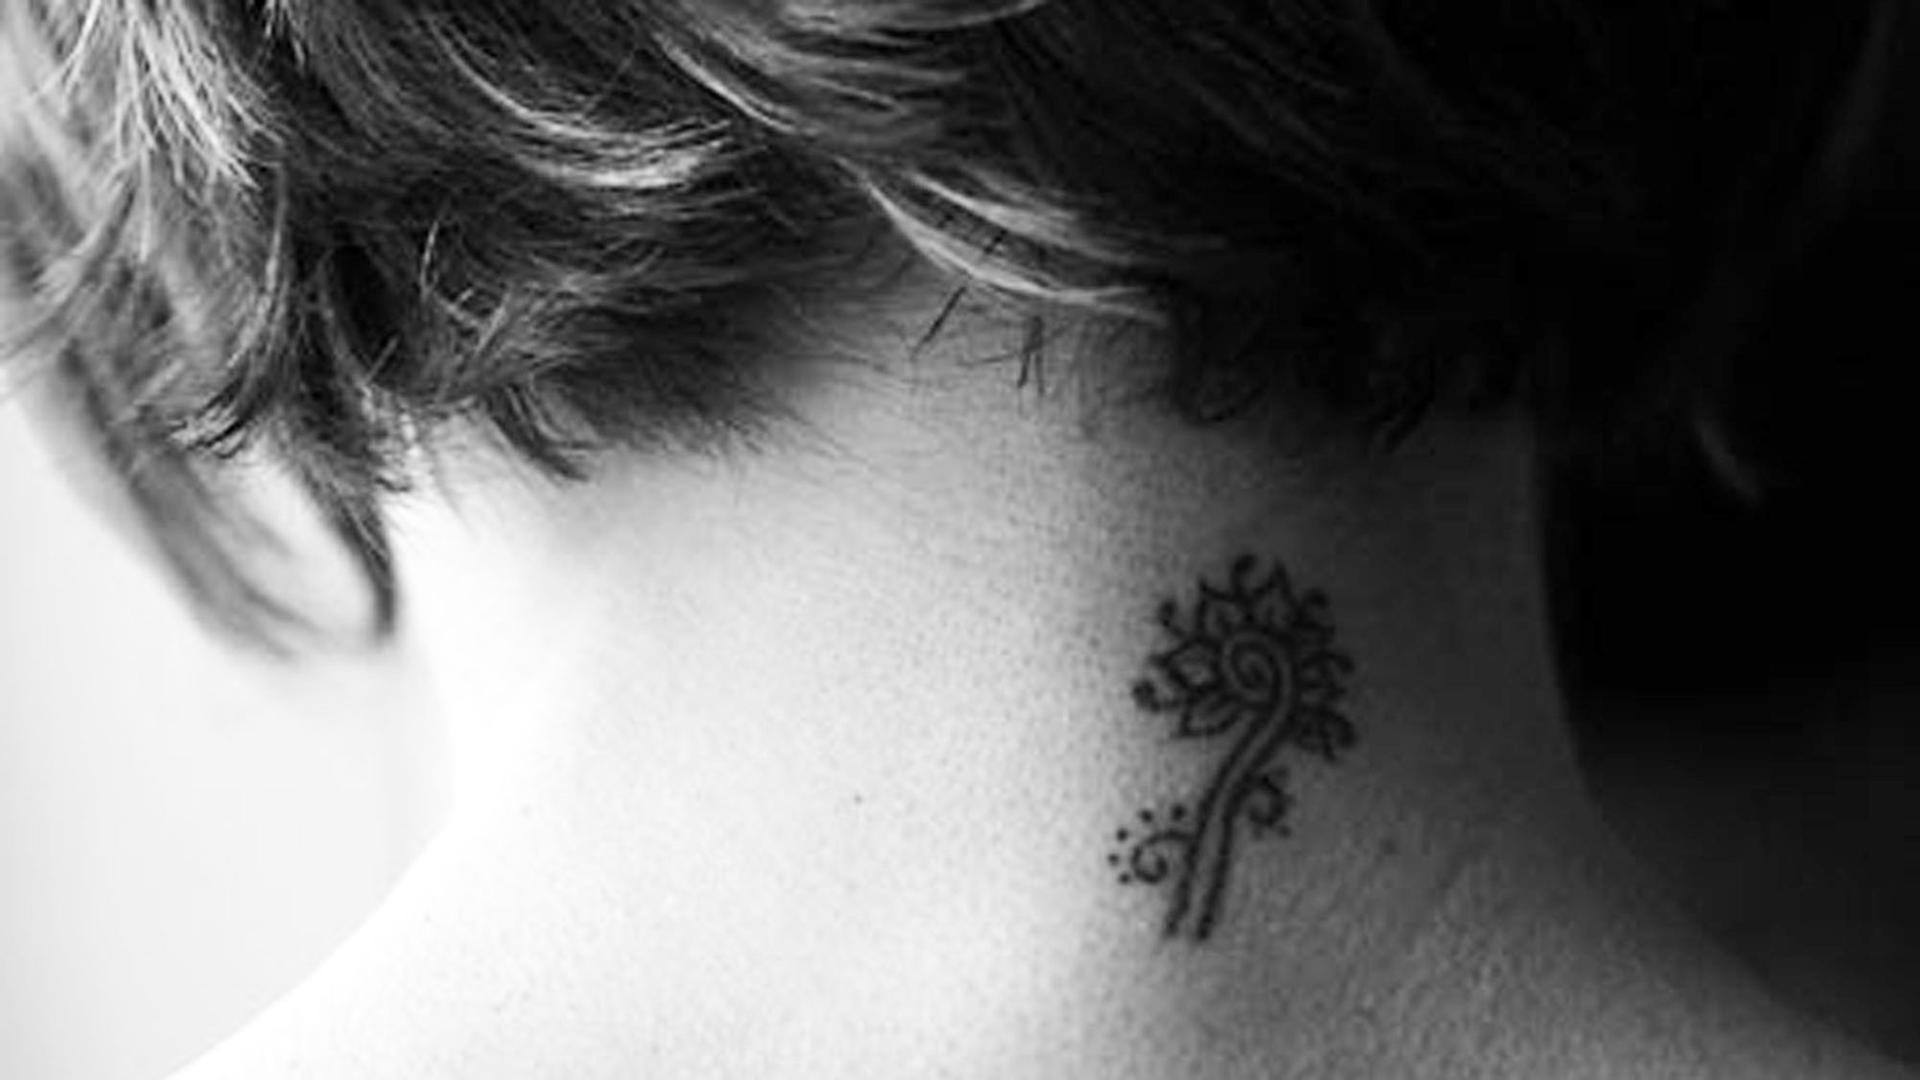 Ein Tattoo am Nacken einer Frau.